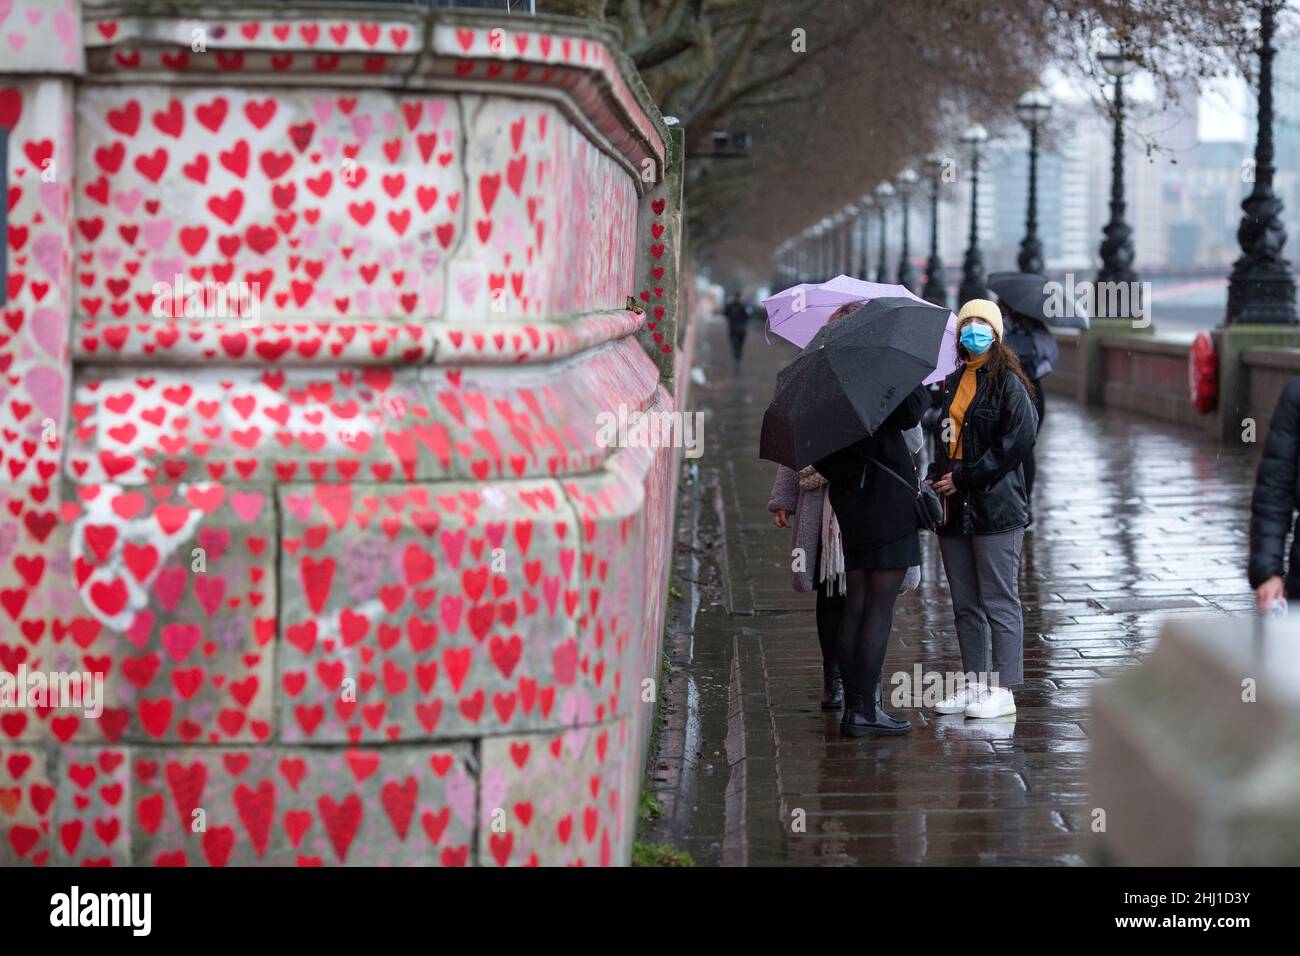 Fußgänger werden an der National Covid Memorial Wall in London neben roten Herzen, die diejenigen darstellen, die an Covid-19 gestorben sind, gesehen. Stockfoto